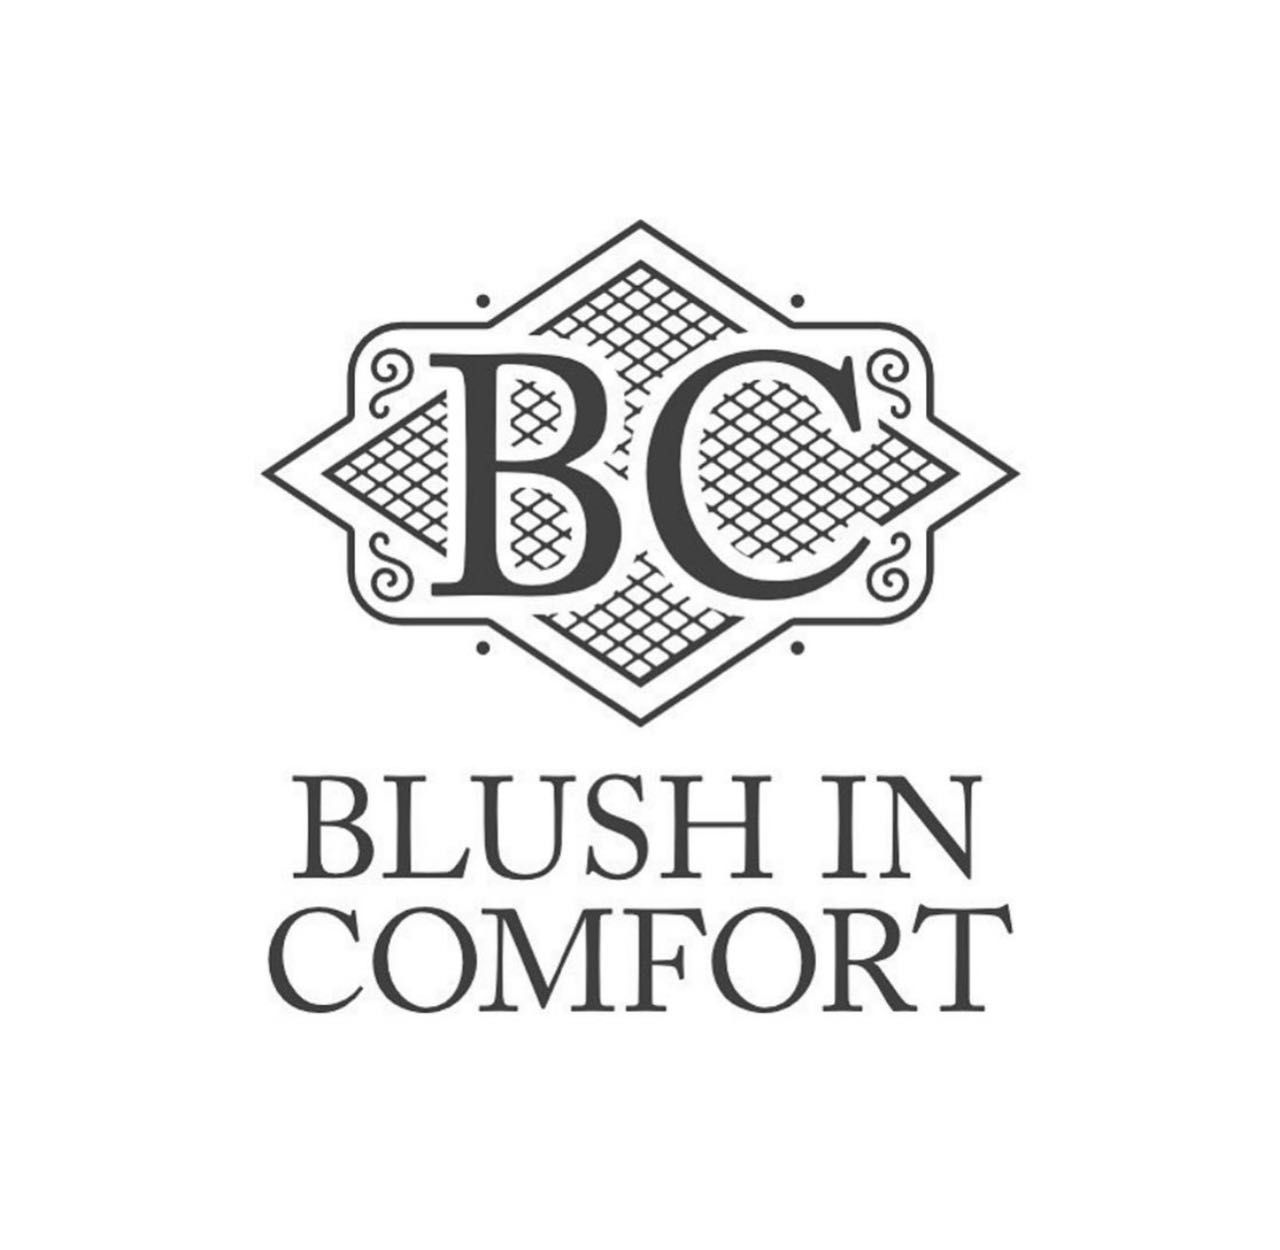 Blush in Comfort, 235 East st, Verse 1:1 Studio’s, Blush in Comfort Room, Methuen, 01844